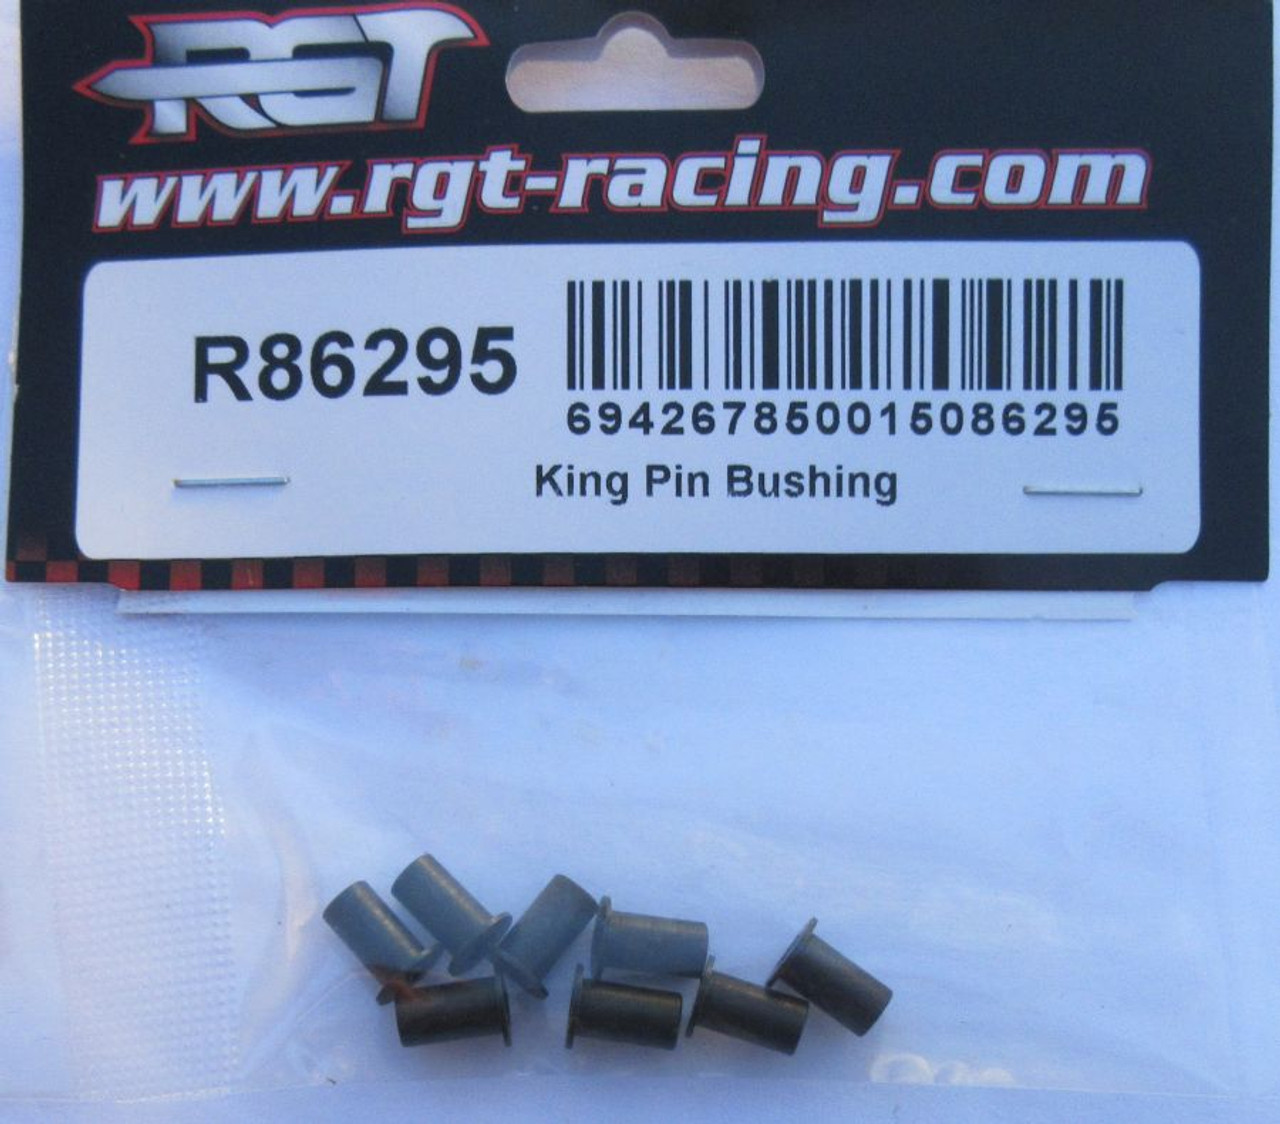 R86295  King Pin Bushing  for RGT RC  Rock Crawler